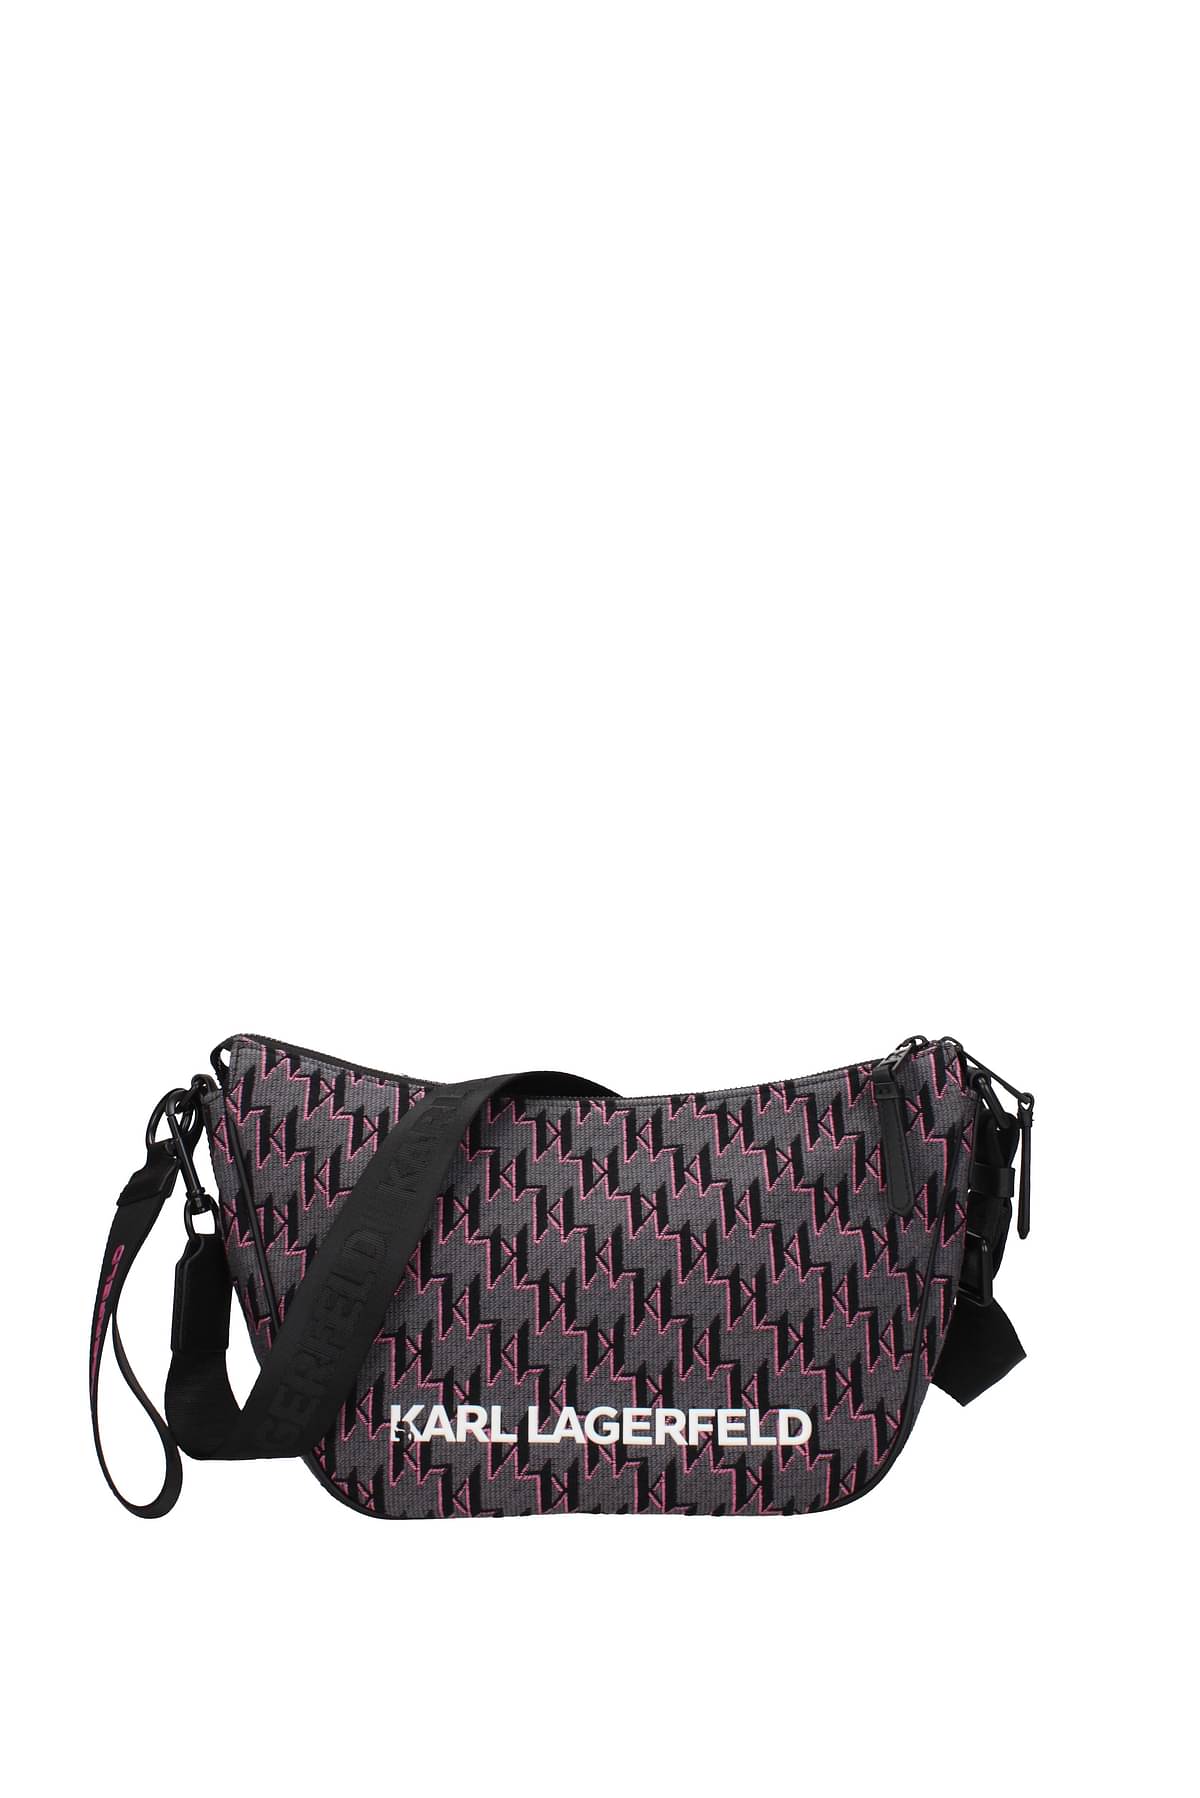 Karl Lagerfeld Crossbody Bag & Keychain Gift Set New